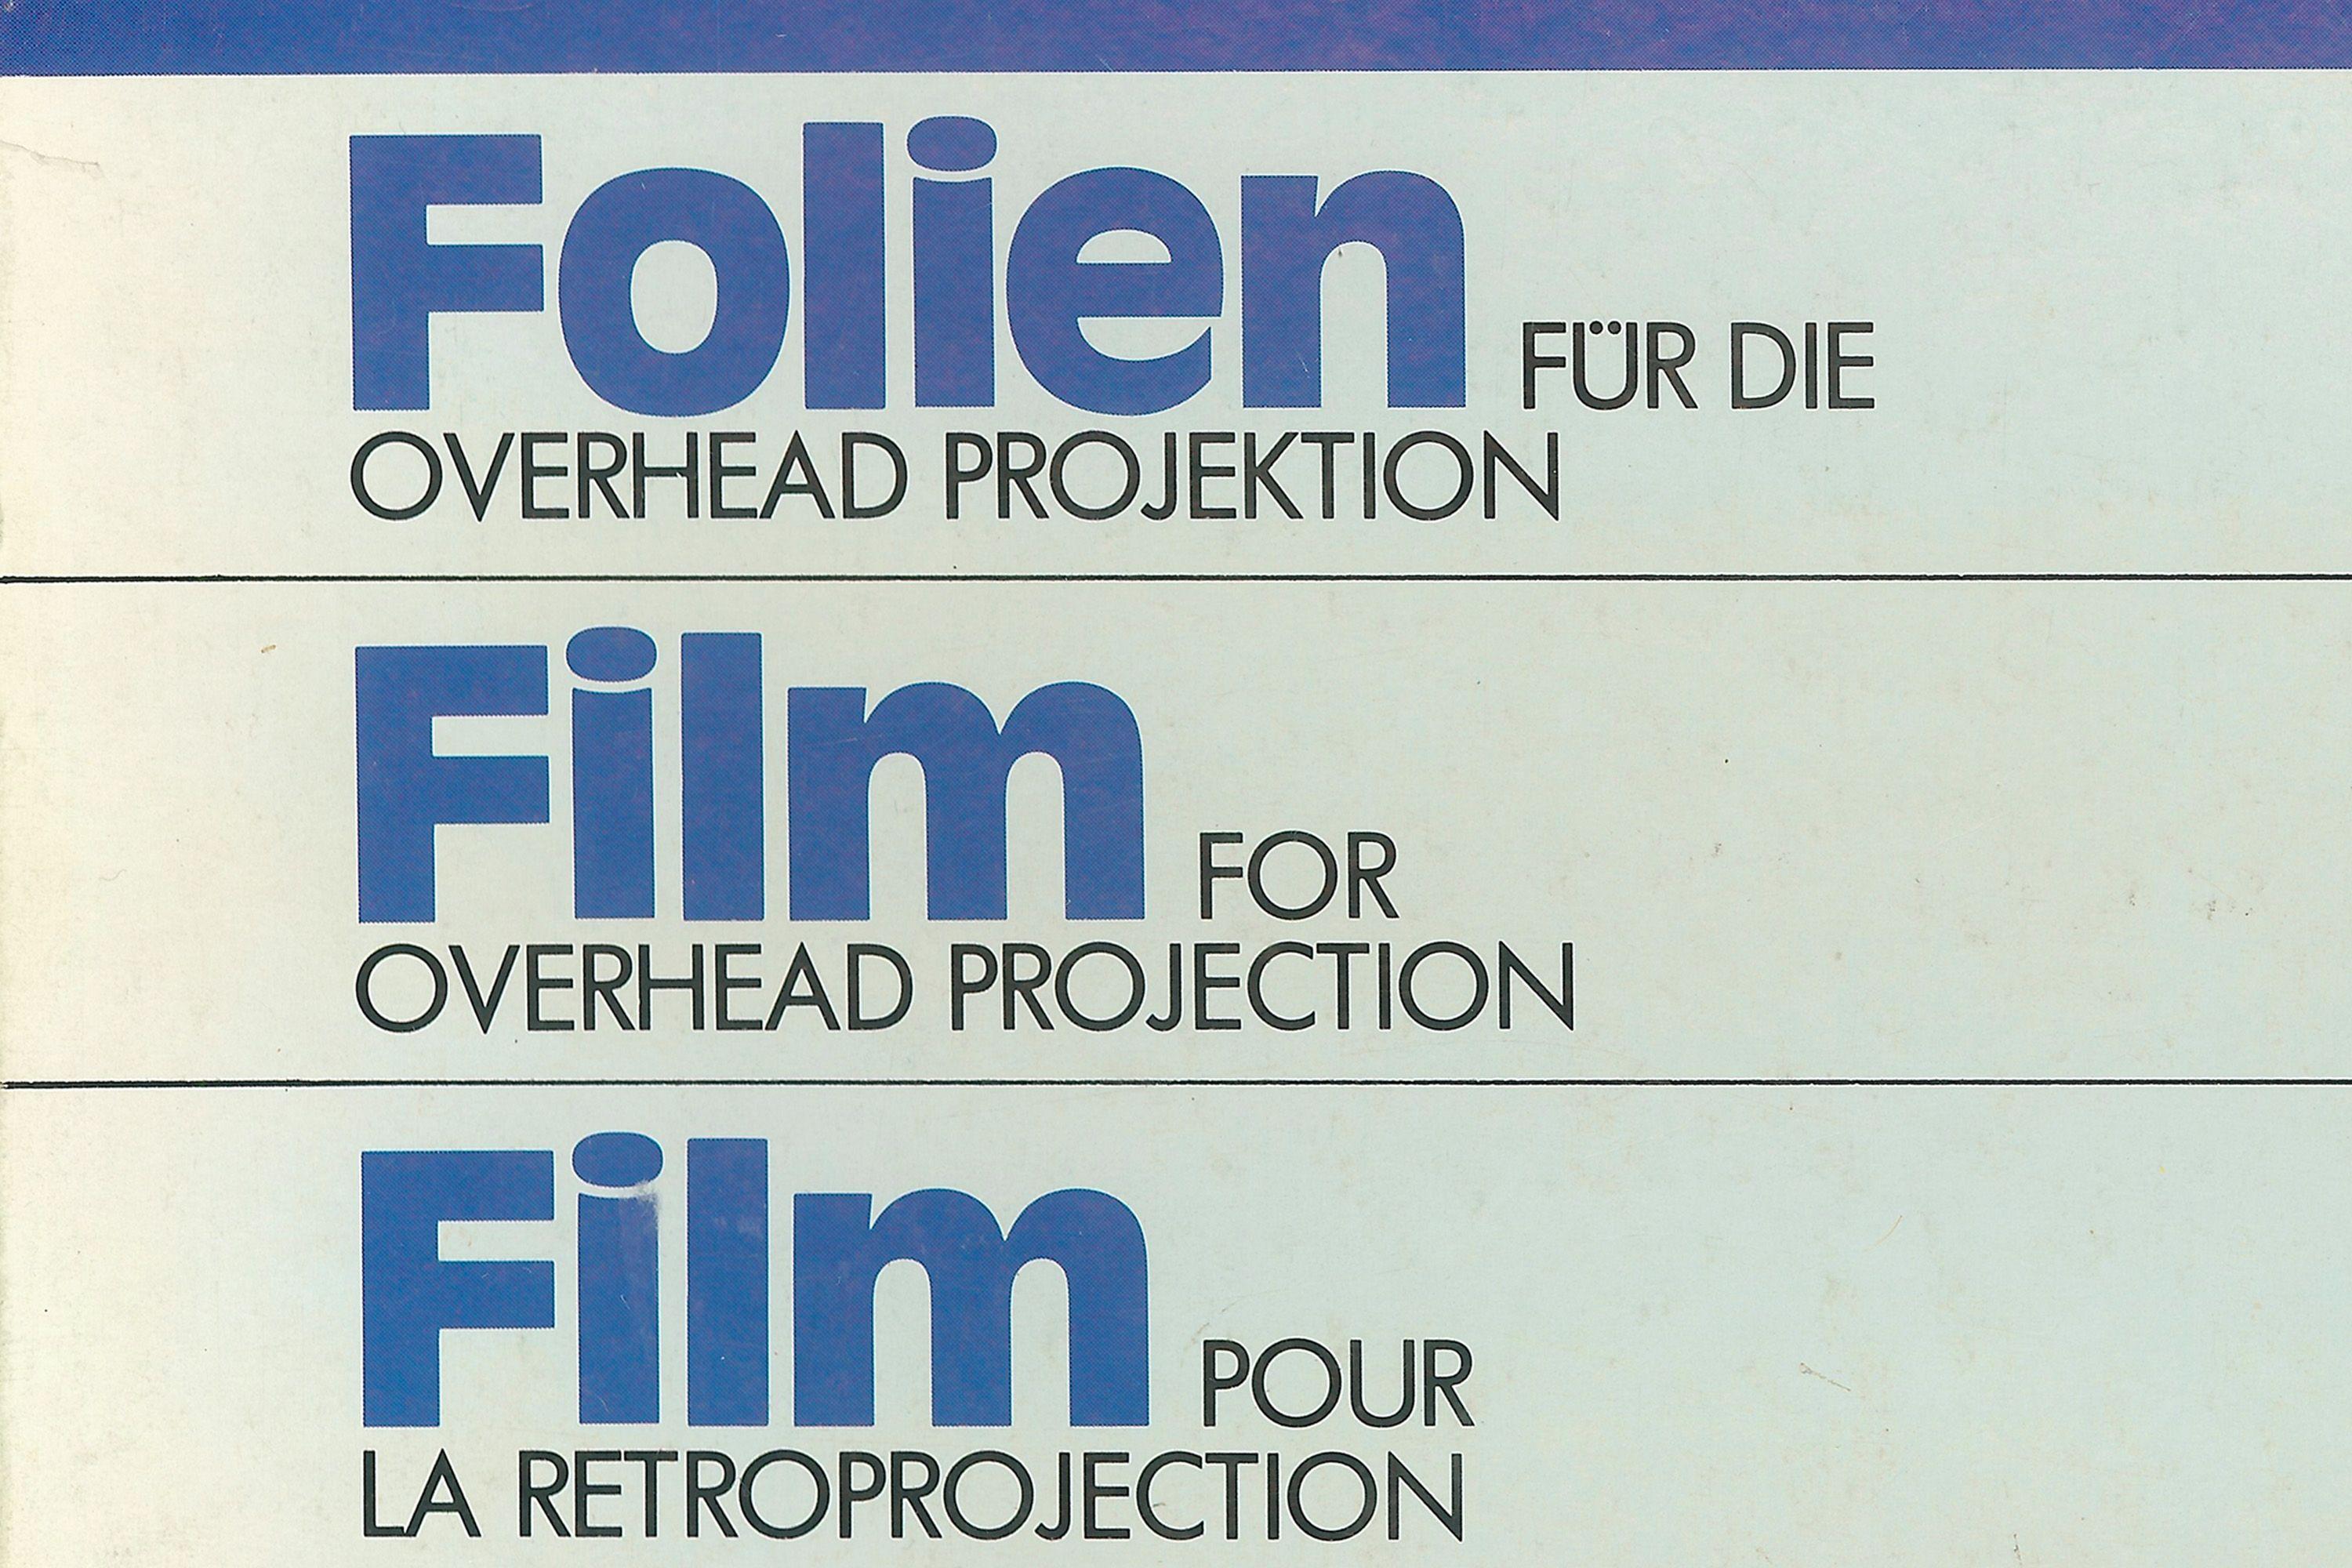 Staedtler Logo - Staedtler Laser Printer Film packaging - Fonts In Use